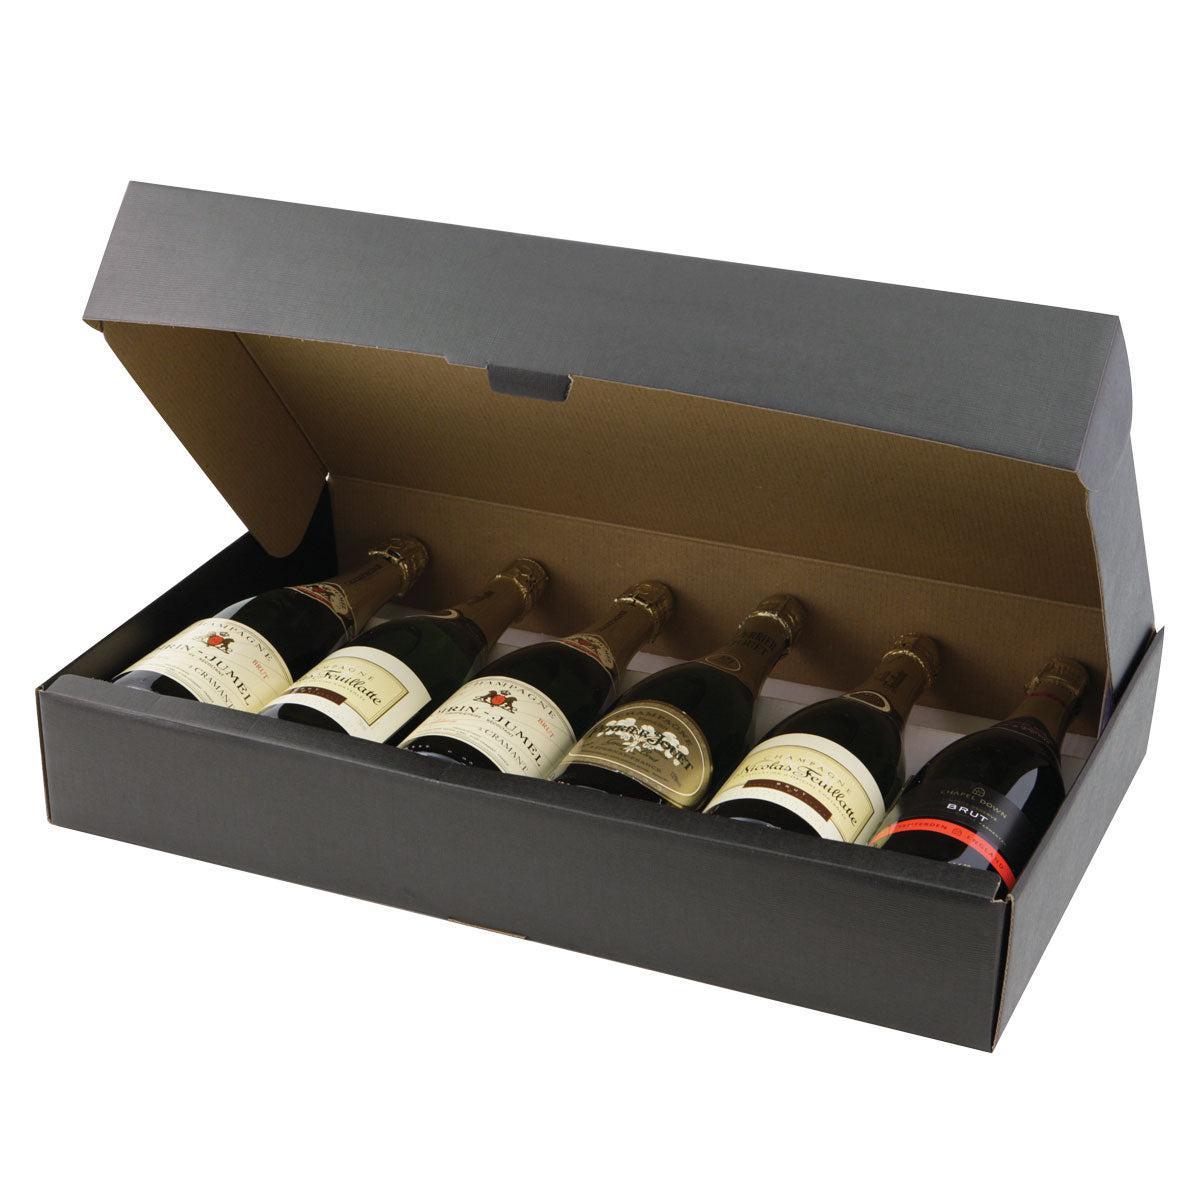 6 bottle wine box